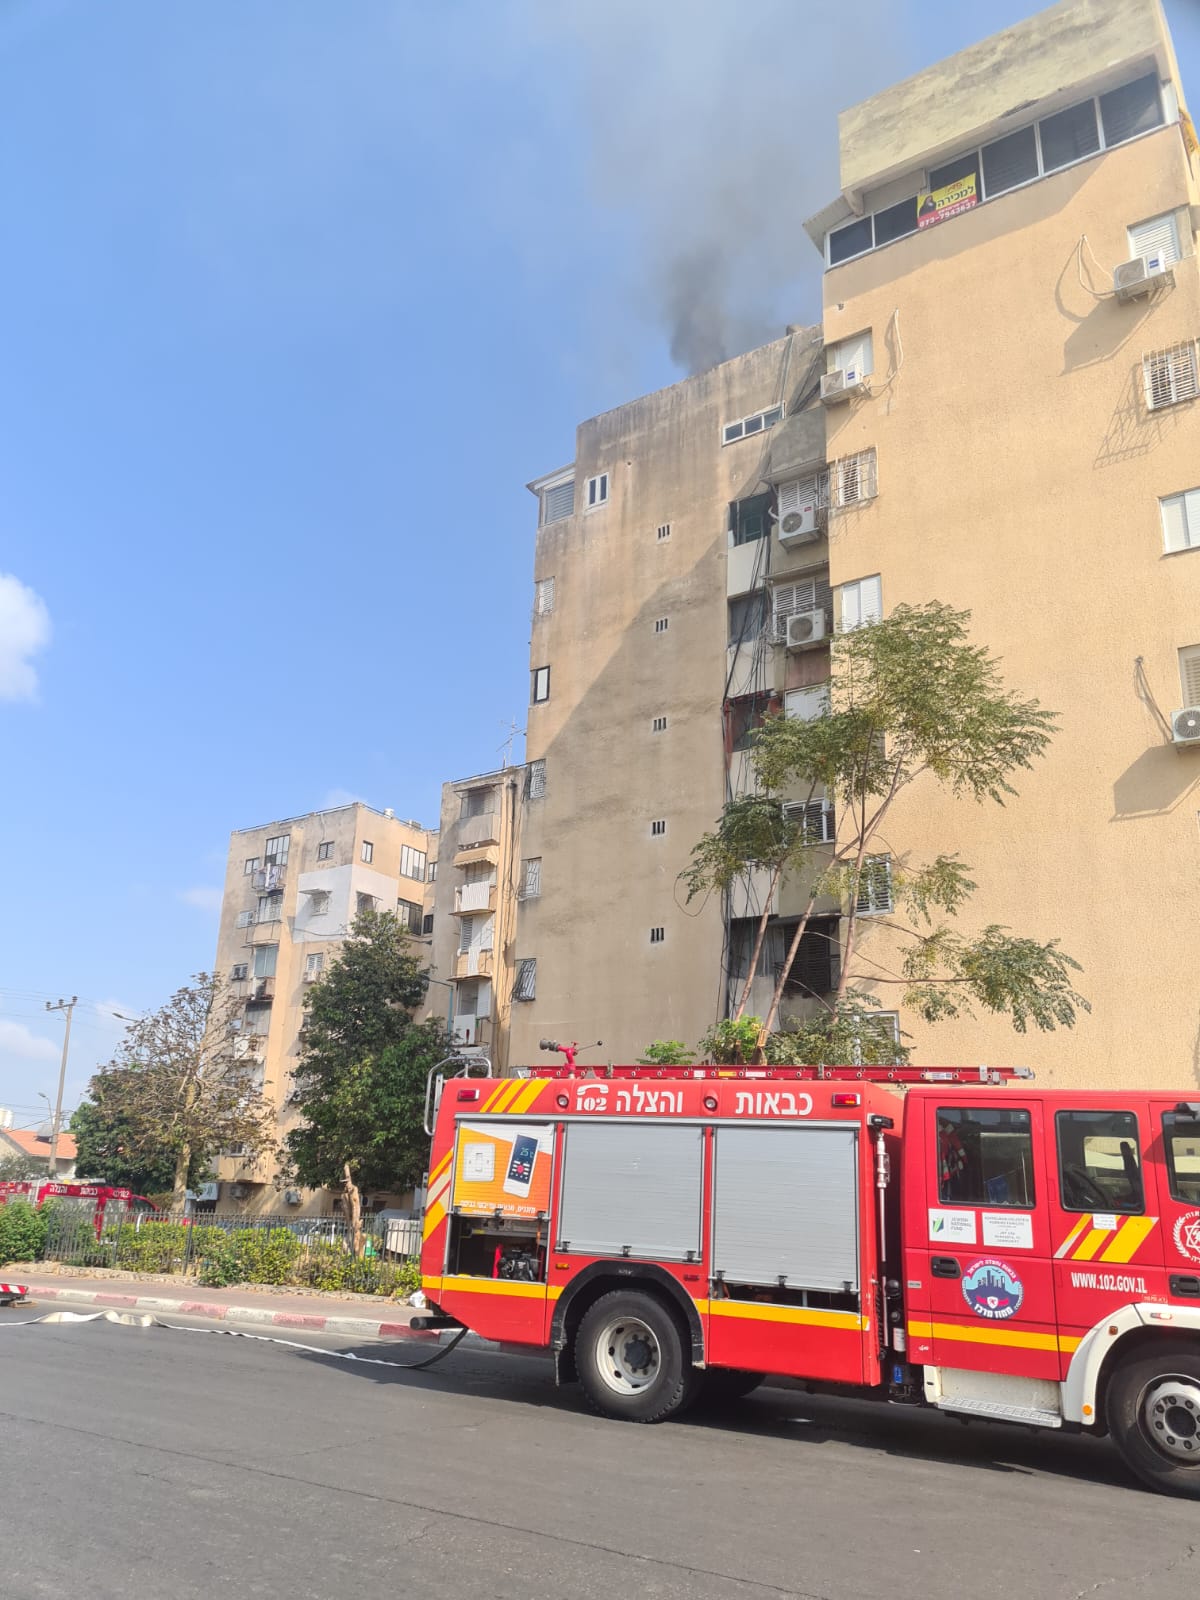 اللد: إندلاع حريق بشقة سكنية والإطفائية تهرع للمكان